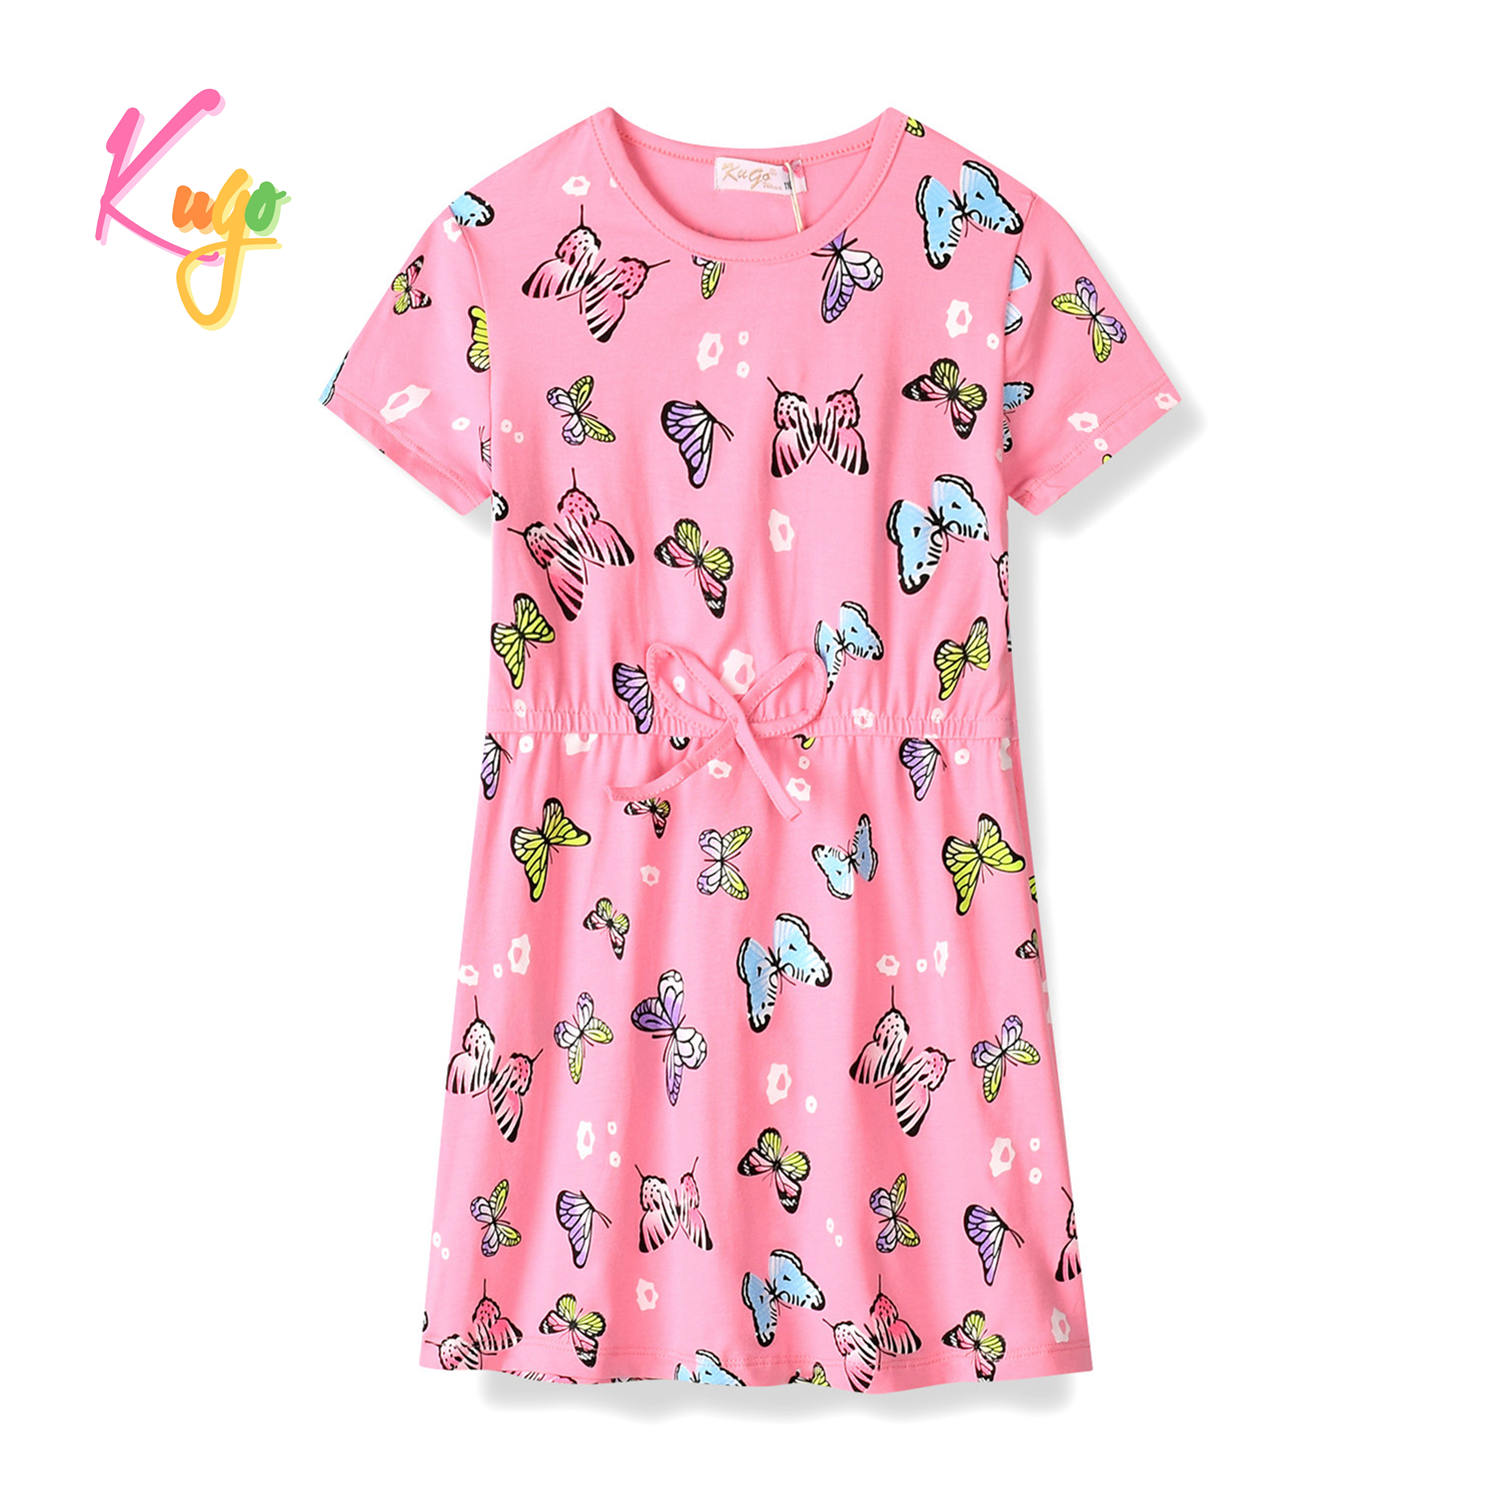 Dívčí šaty - KUGO HS9276, světle růžová Barva: Růžová, Velikost: 104